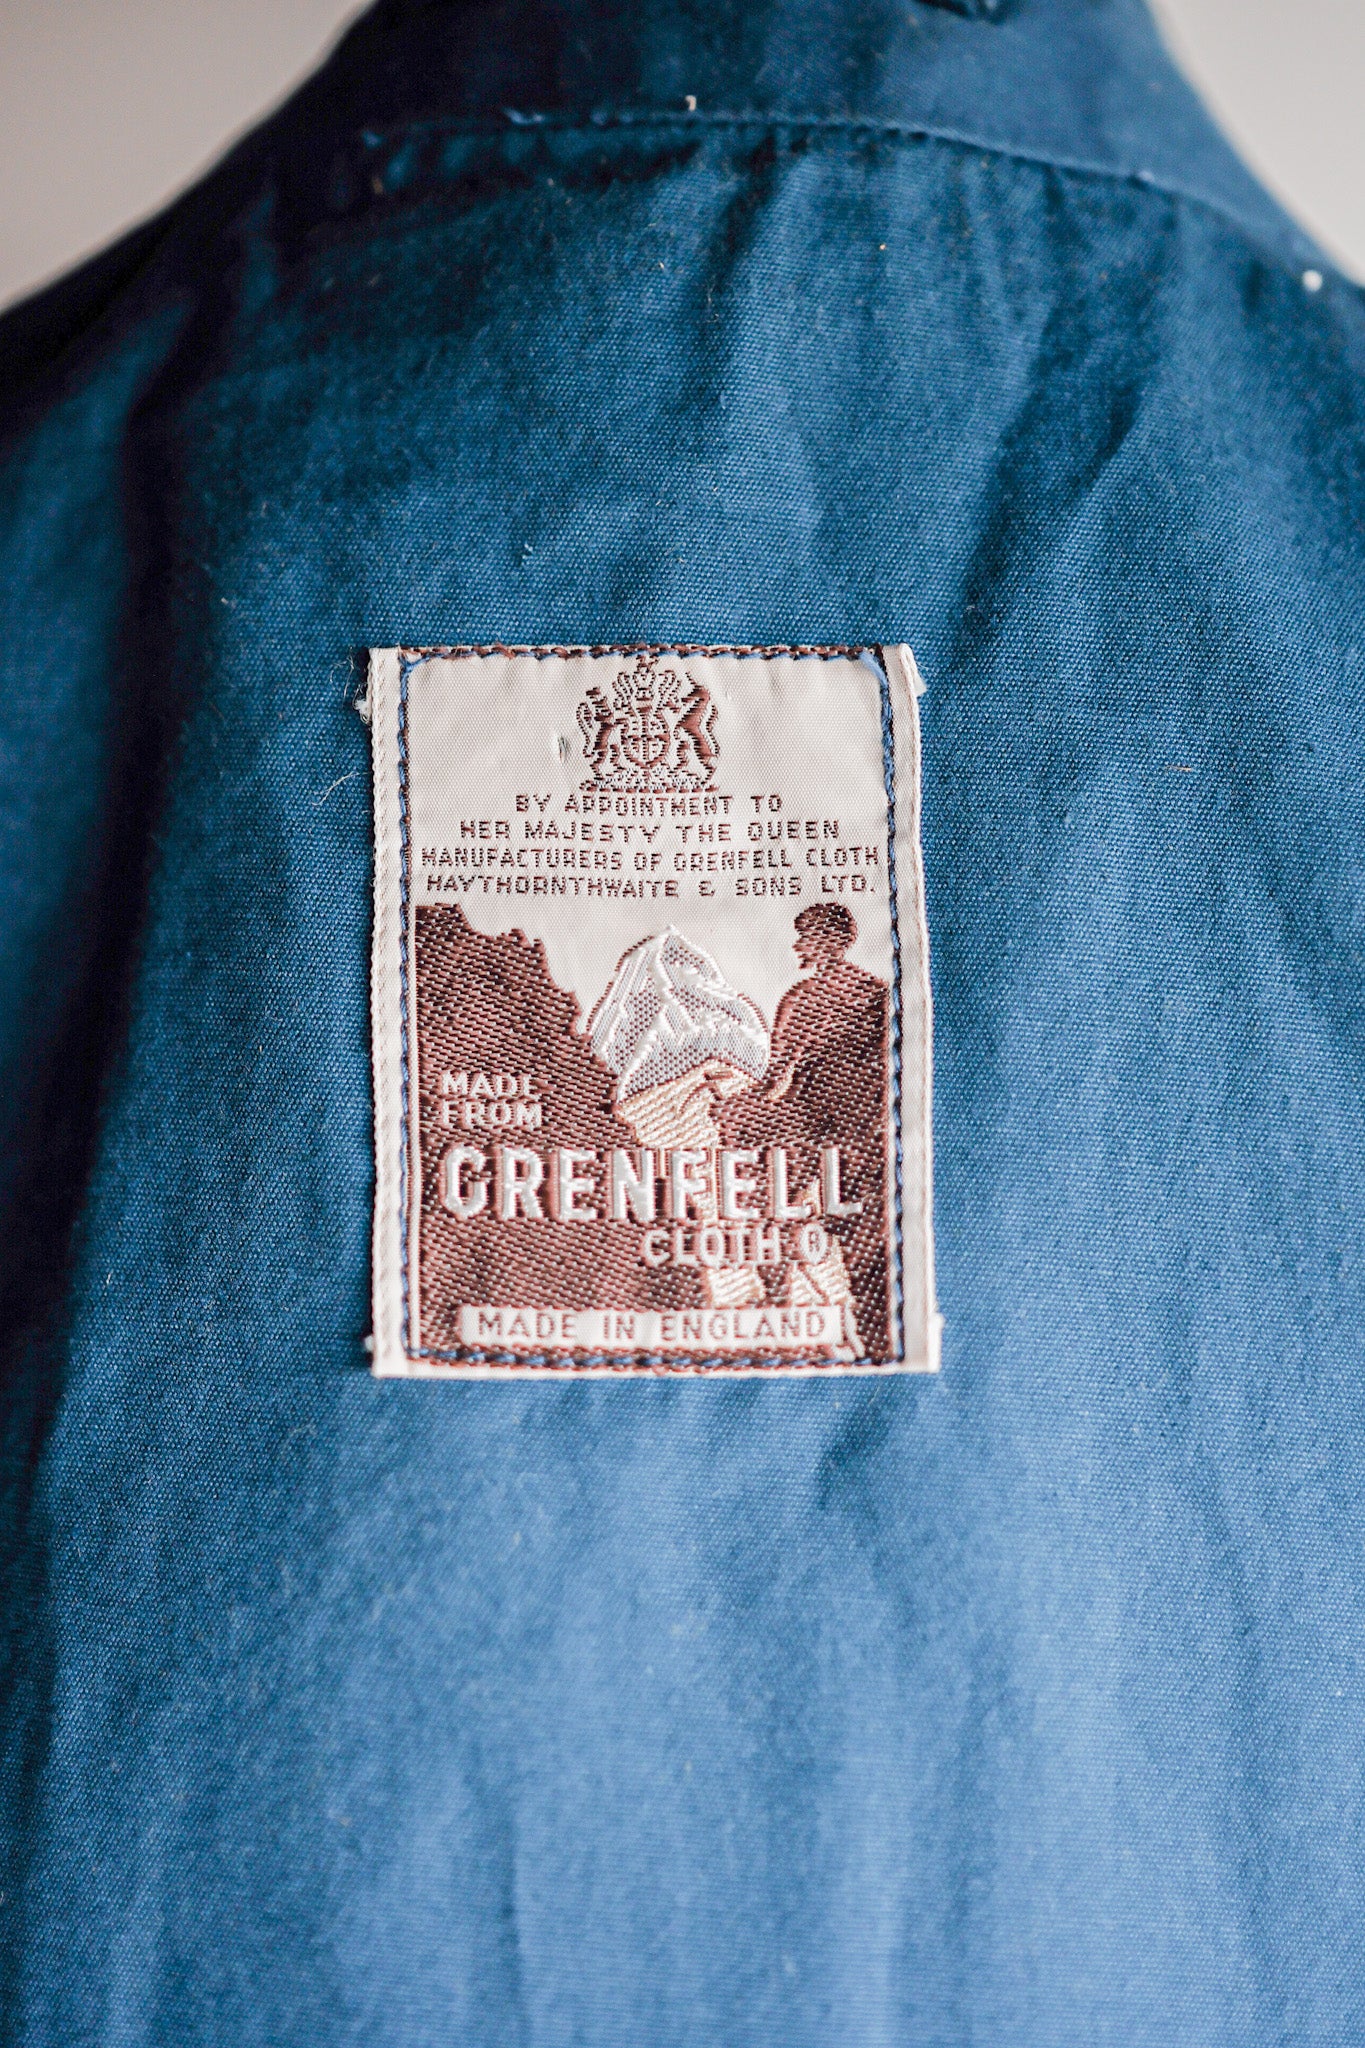 [〜70年代]復古Grenfell Walker夾克大小。44“山地標籤”